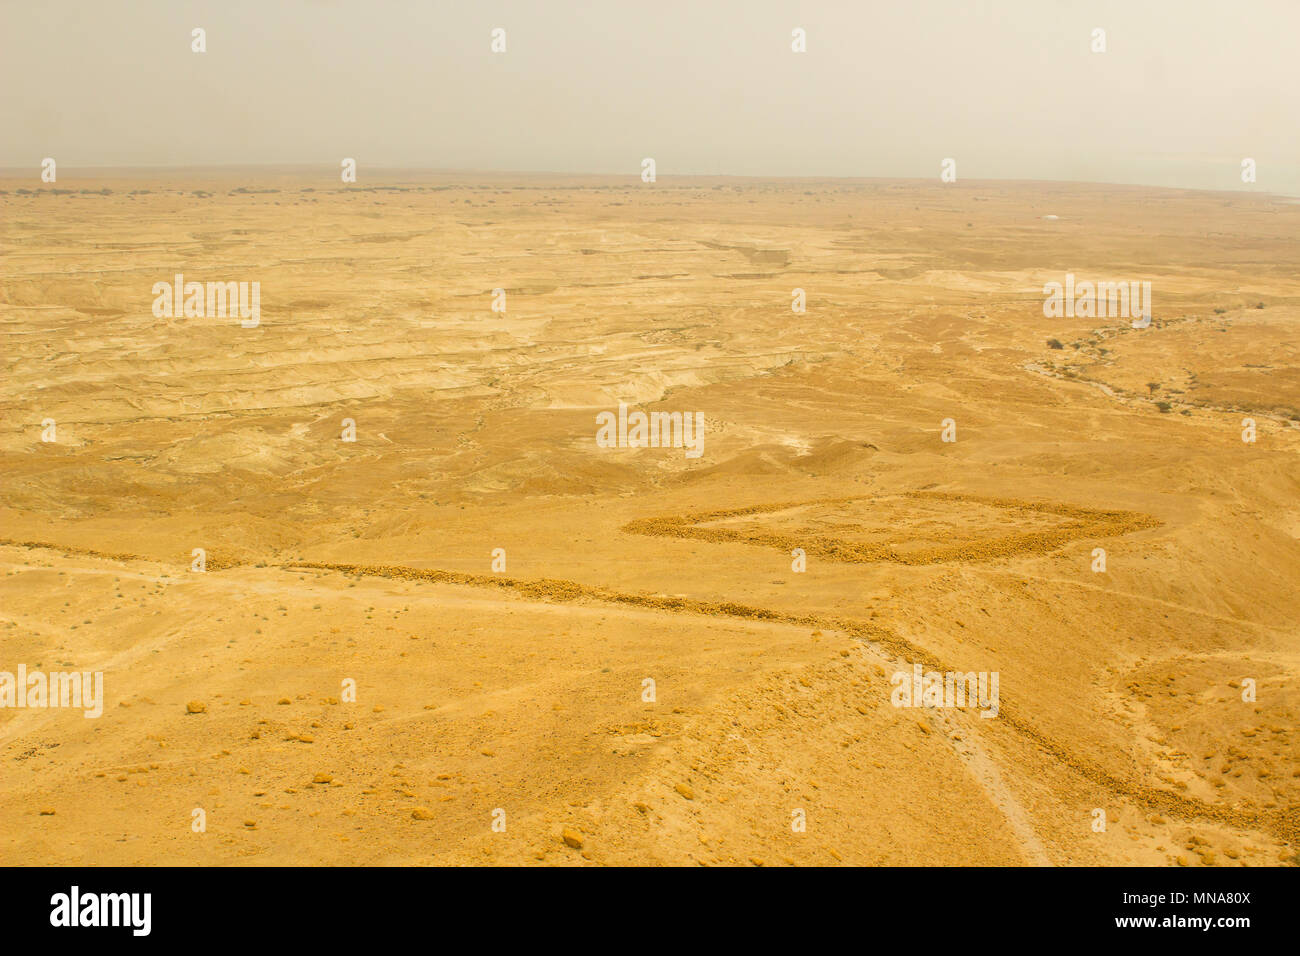 Une vue aérienne du sol du désert dans le District sud d'Israël pris de la falaise de Massada sur un jour brumeux Banque D'Images